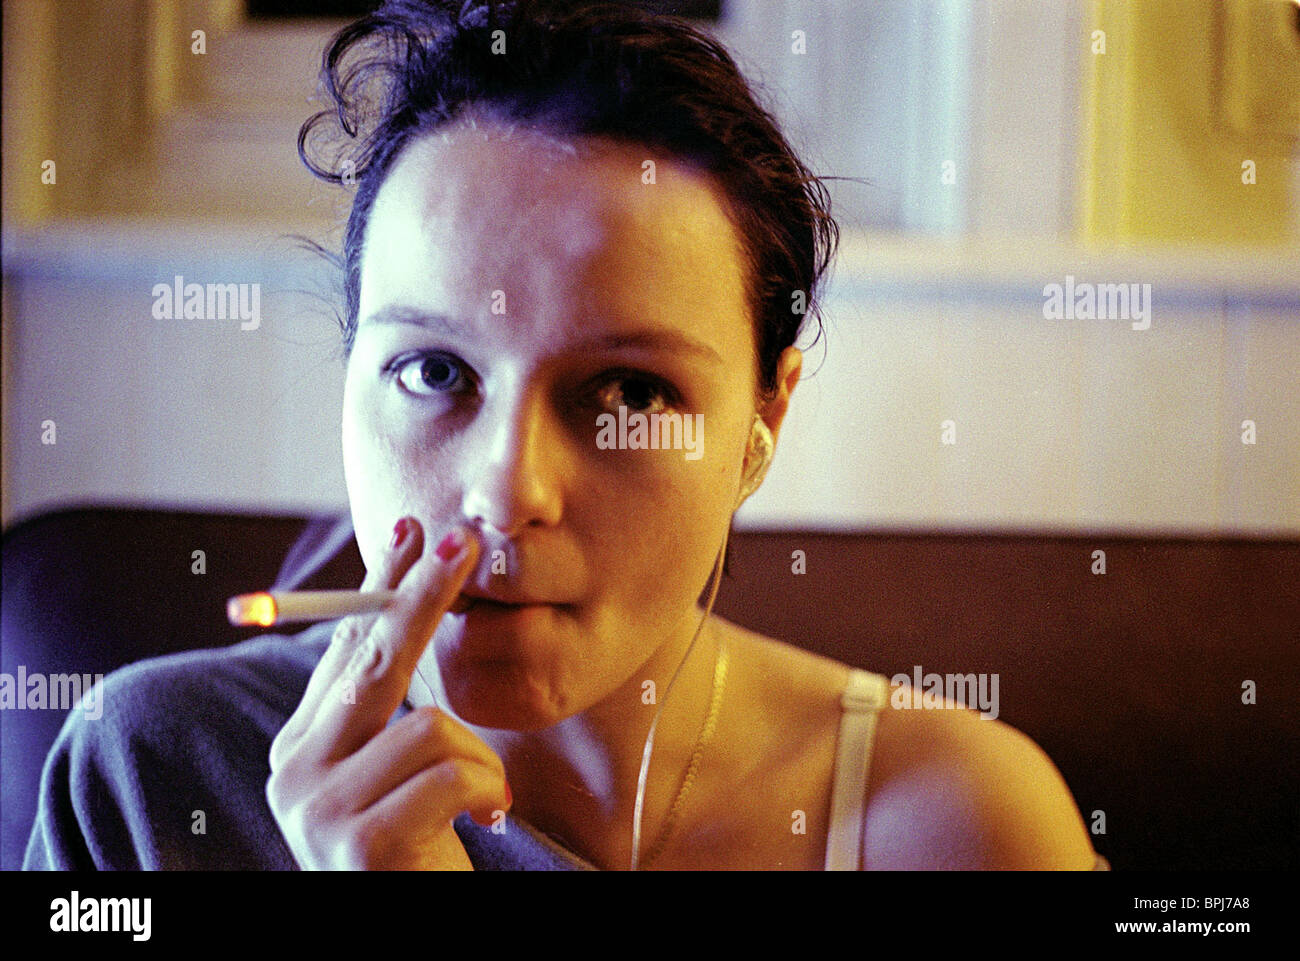 Samantha Morton raucht einer Zigarette (oder Cannabis)
